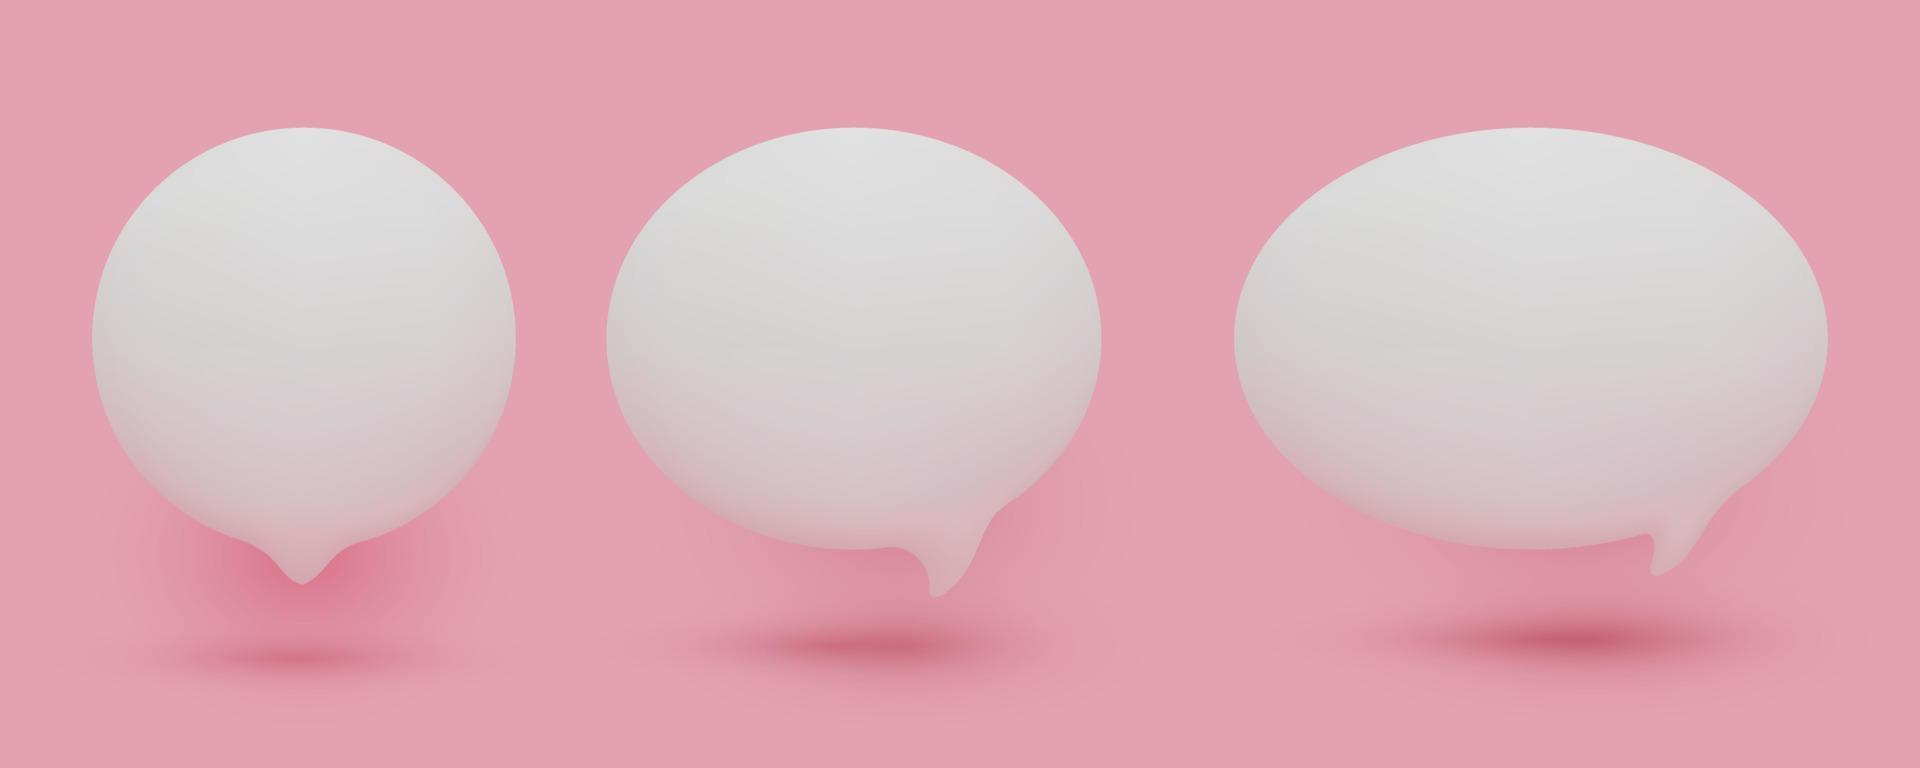 conjunto de ícones de bolha do discurso branco bonito 3d, isolados no fundo rosa pastel. conjunto de ícones de bate-papo 3d de malha vetorial vetor